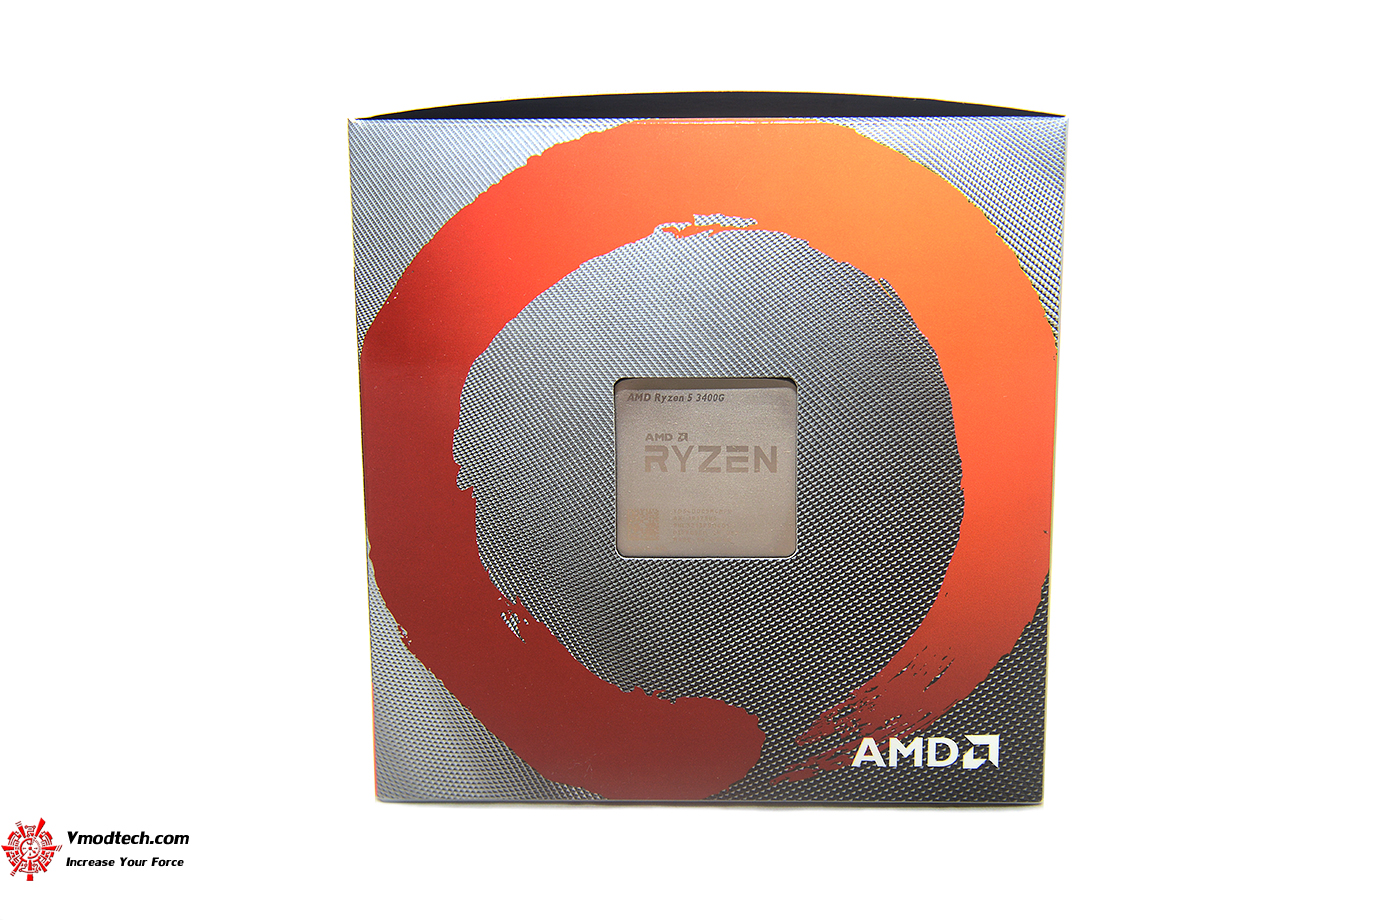 dsc 6572 AMD RYZEN 5 3400G PROCESSOR REVIEW 